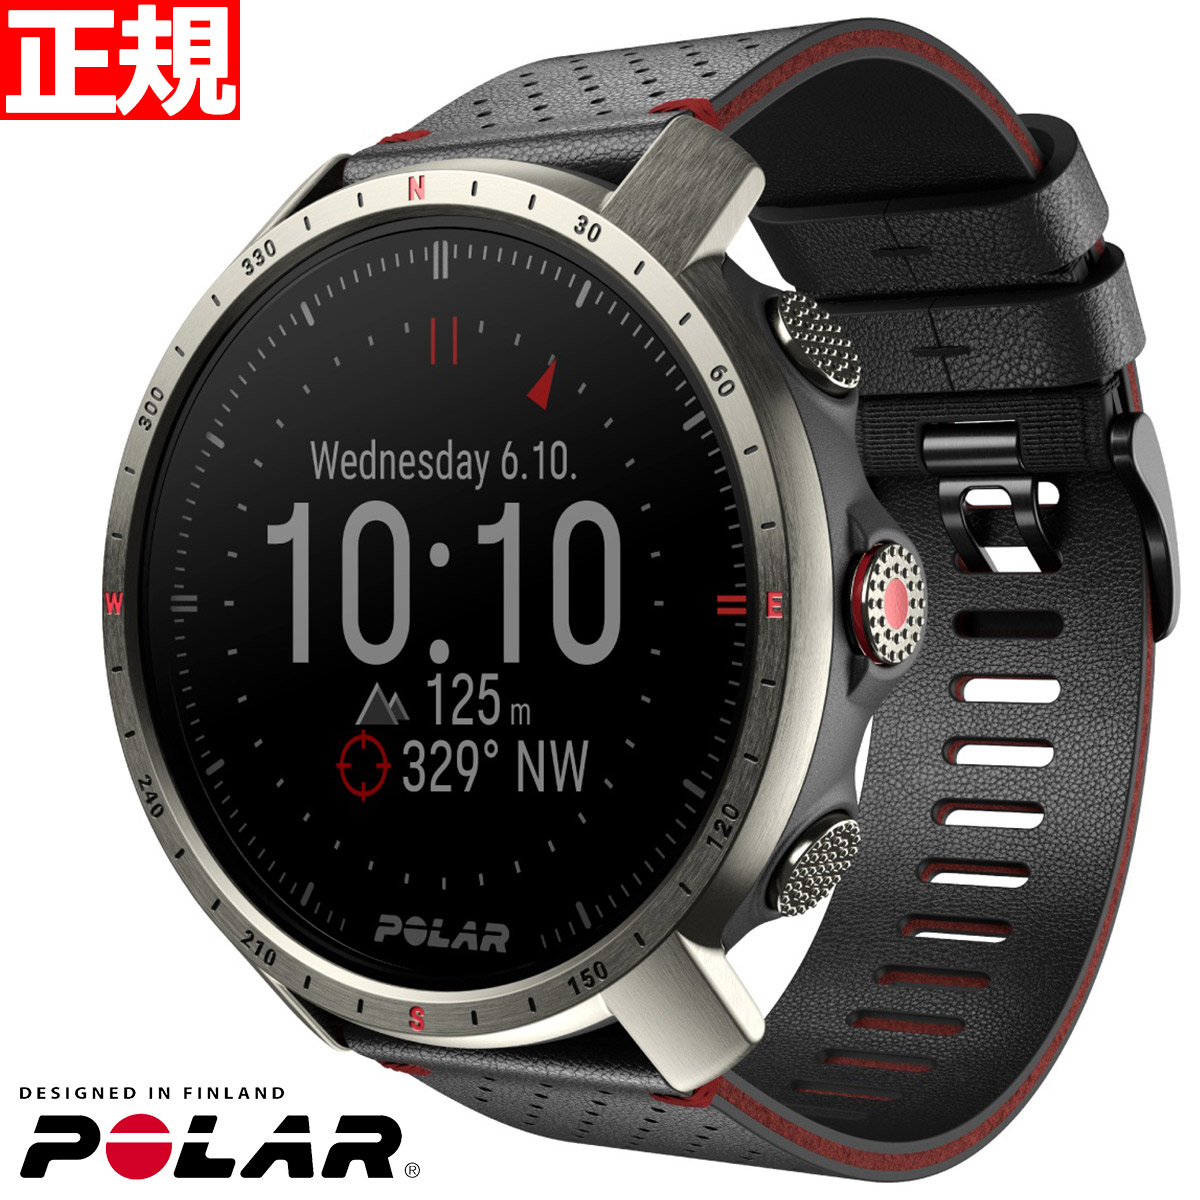 ポラール POLAR GRIT X PRO TITAN スマートウォッチ GPS 心拍 トレーニング ランニング 登山 アウトドア 腕時計 グリットXプロ チタン M/L 90085777 日本正規品